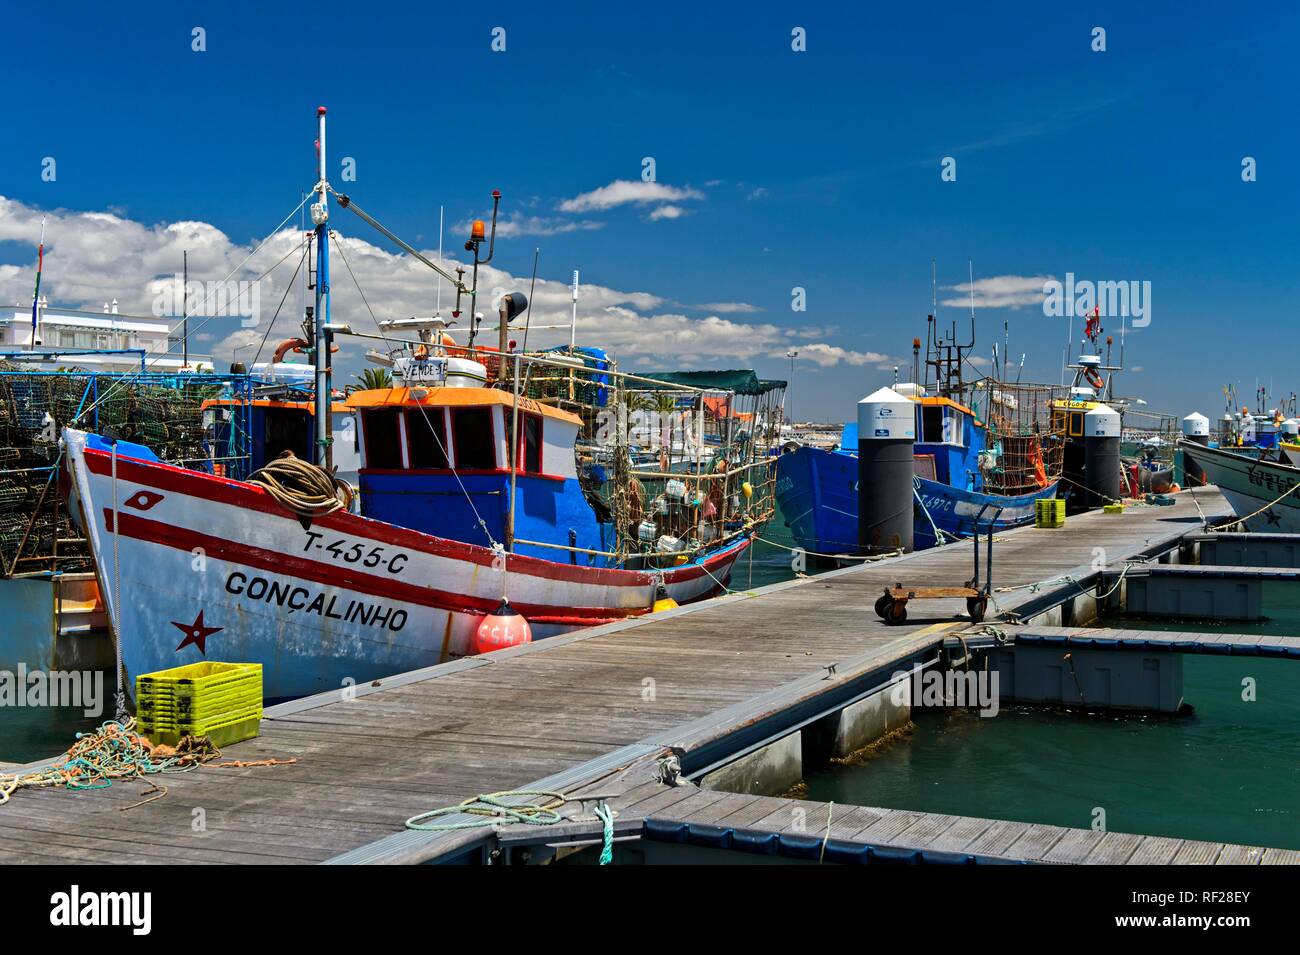 Fishing boat in the port of Santa Luzia, Algarve, Portugal Stock Photo